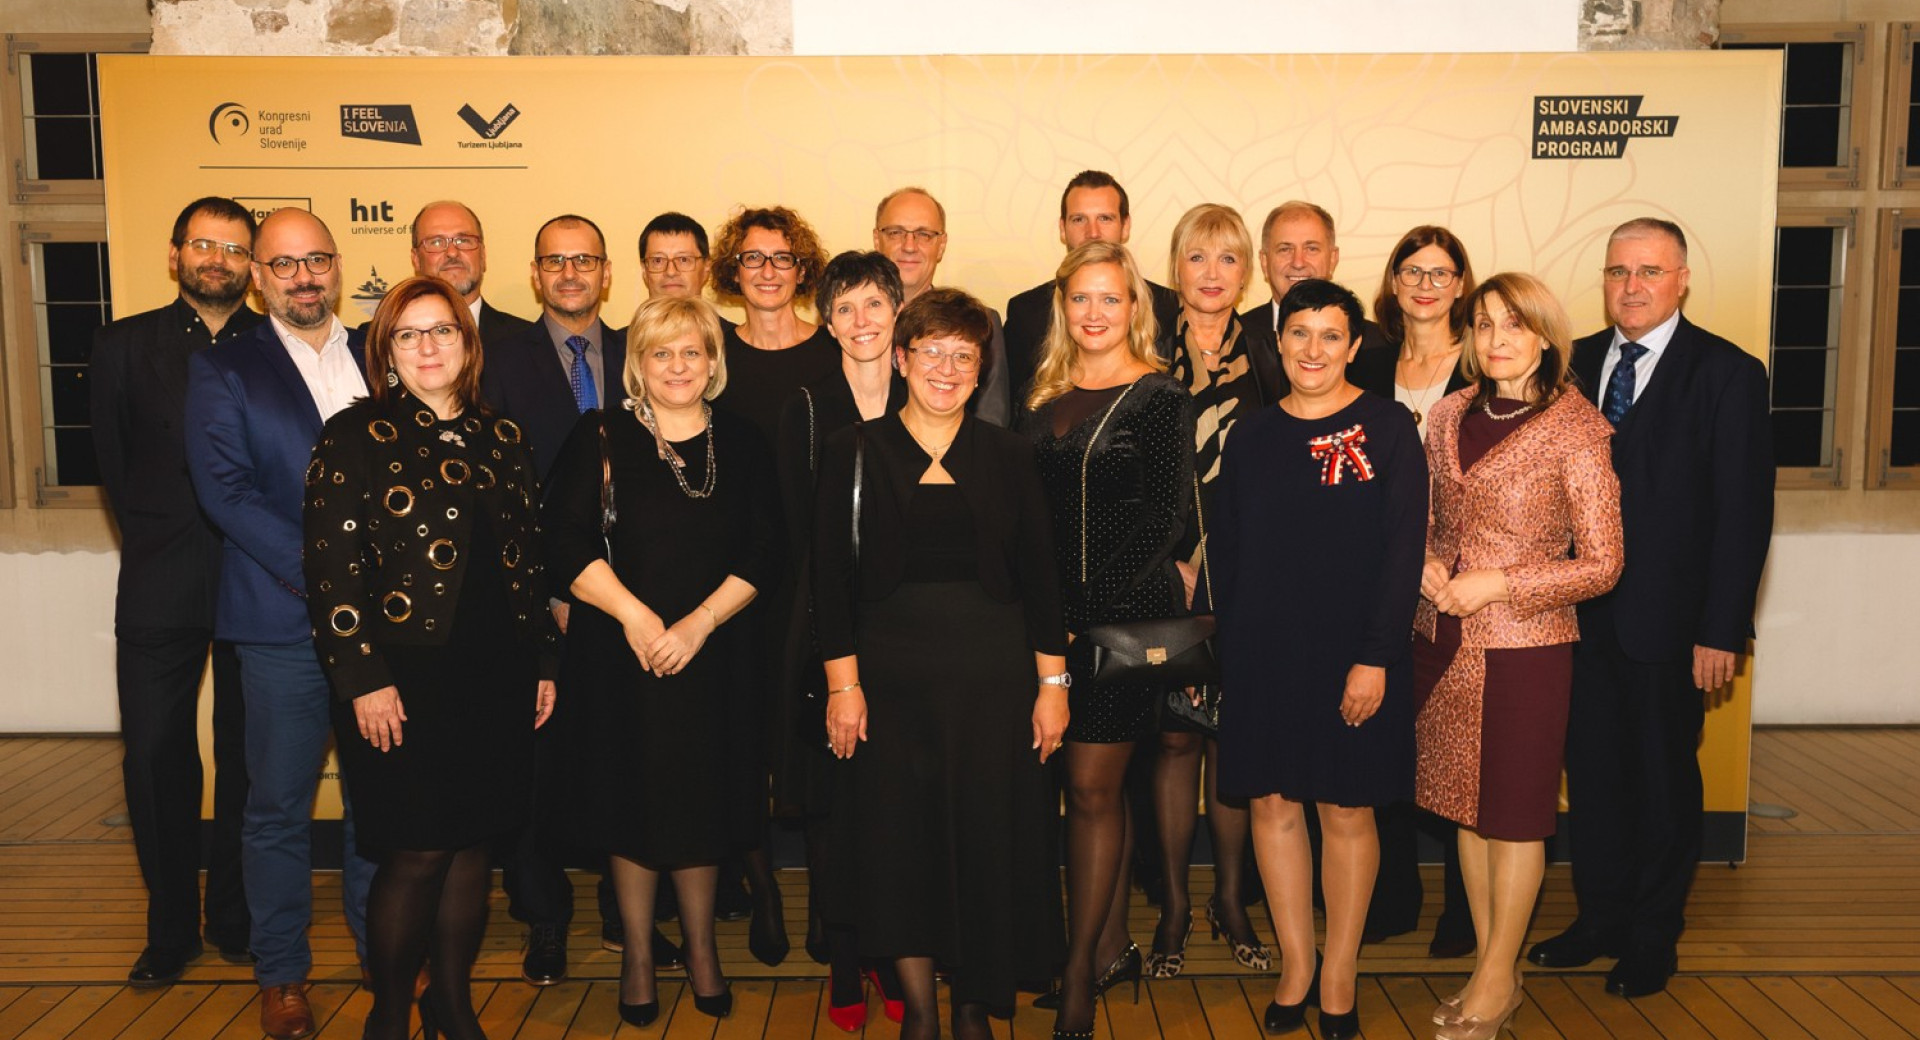 Fotografija prvih ljubljanskih kongresnih ambaadork in ambasadorjev 2019.